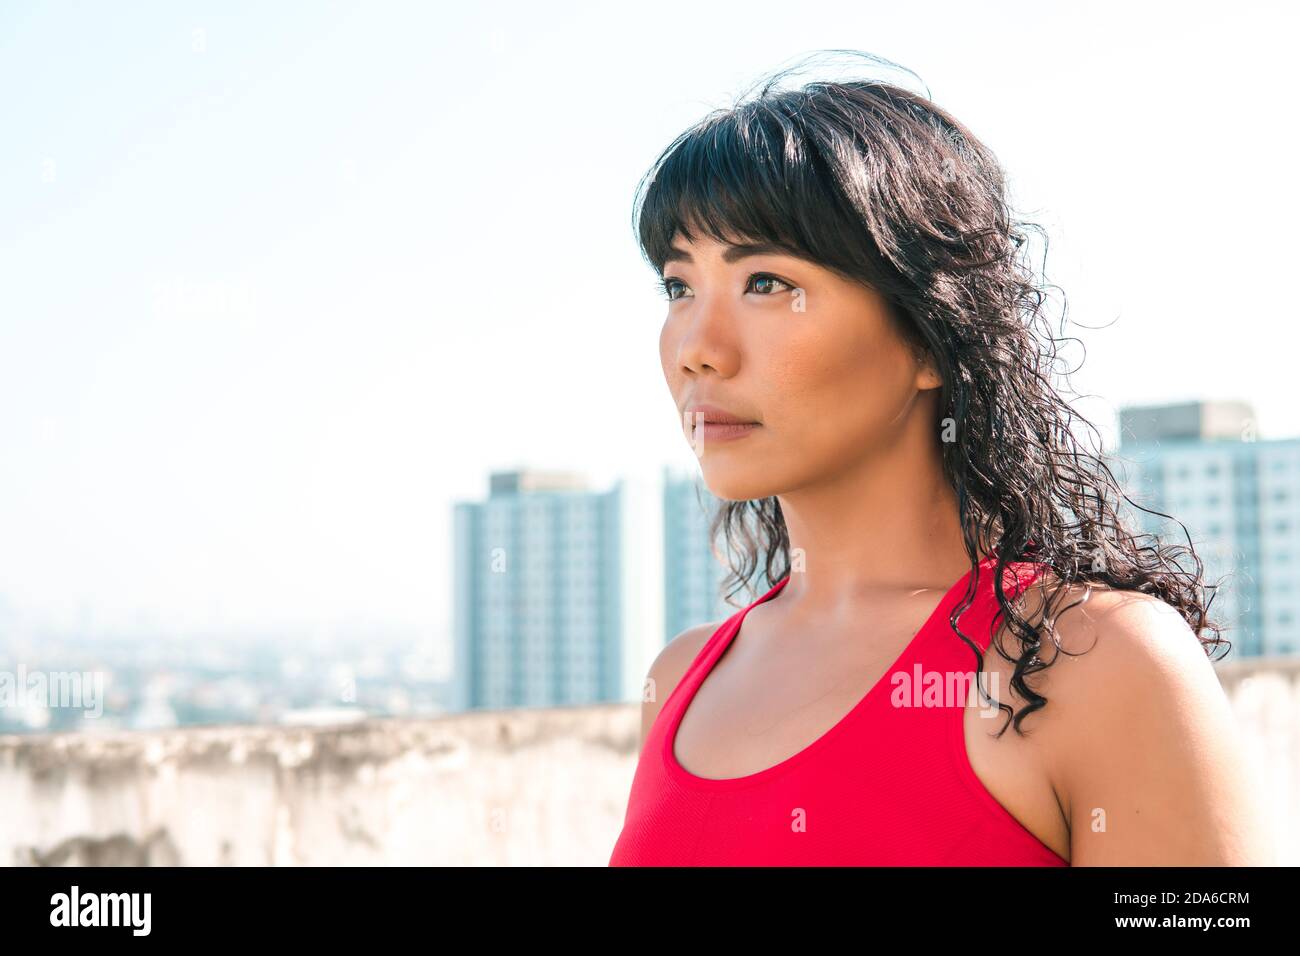 Junge asiatische Frau, die weit entfernt in die Skyline von Gebäuden auf Dächern schaut. Weibliche Athlete bestimmt im Sport-Outfit mit Kopieplatz Stockfoto